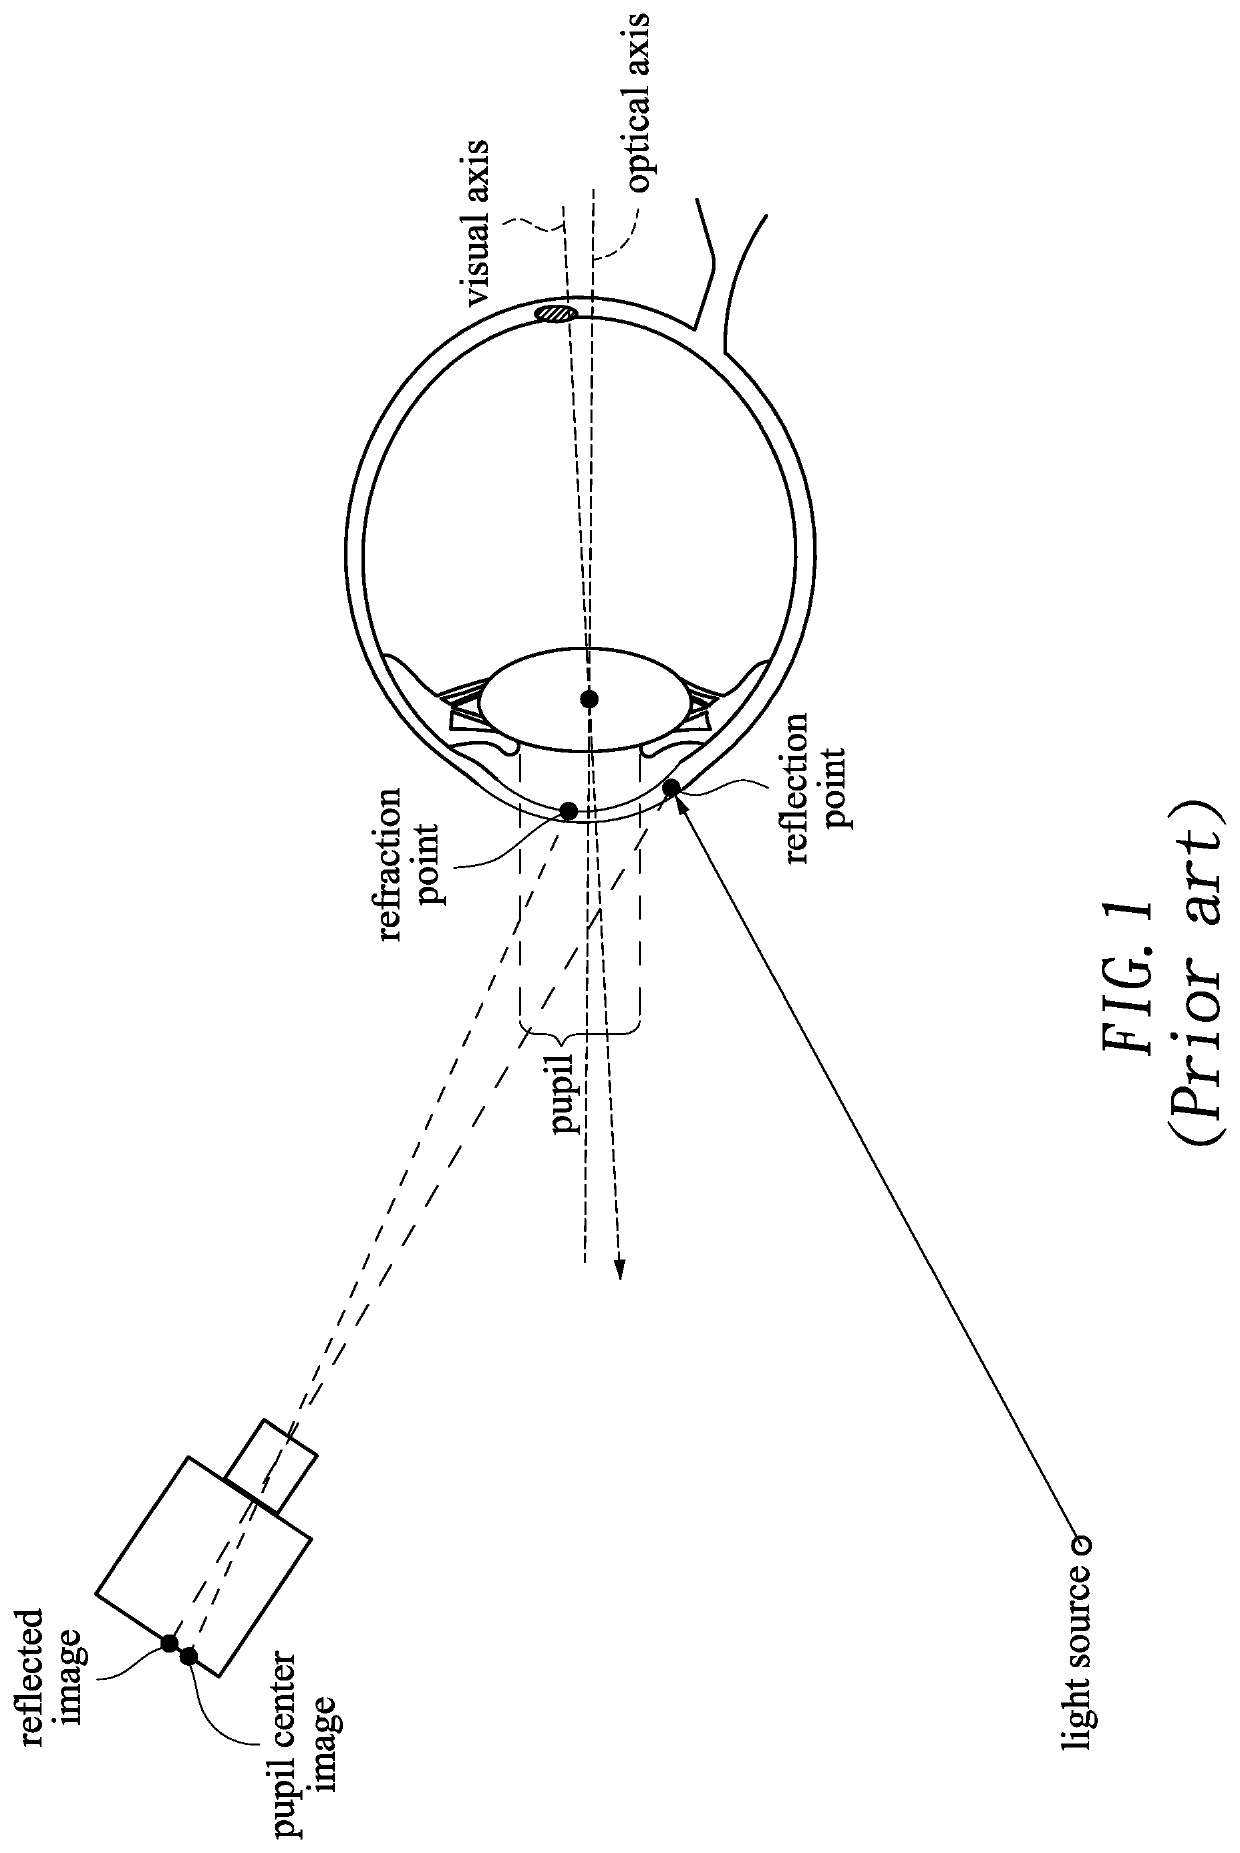 Adaptive eye-tracking calibration method